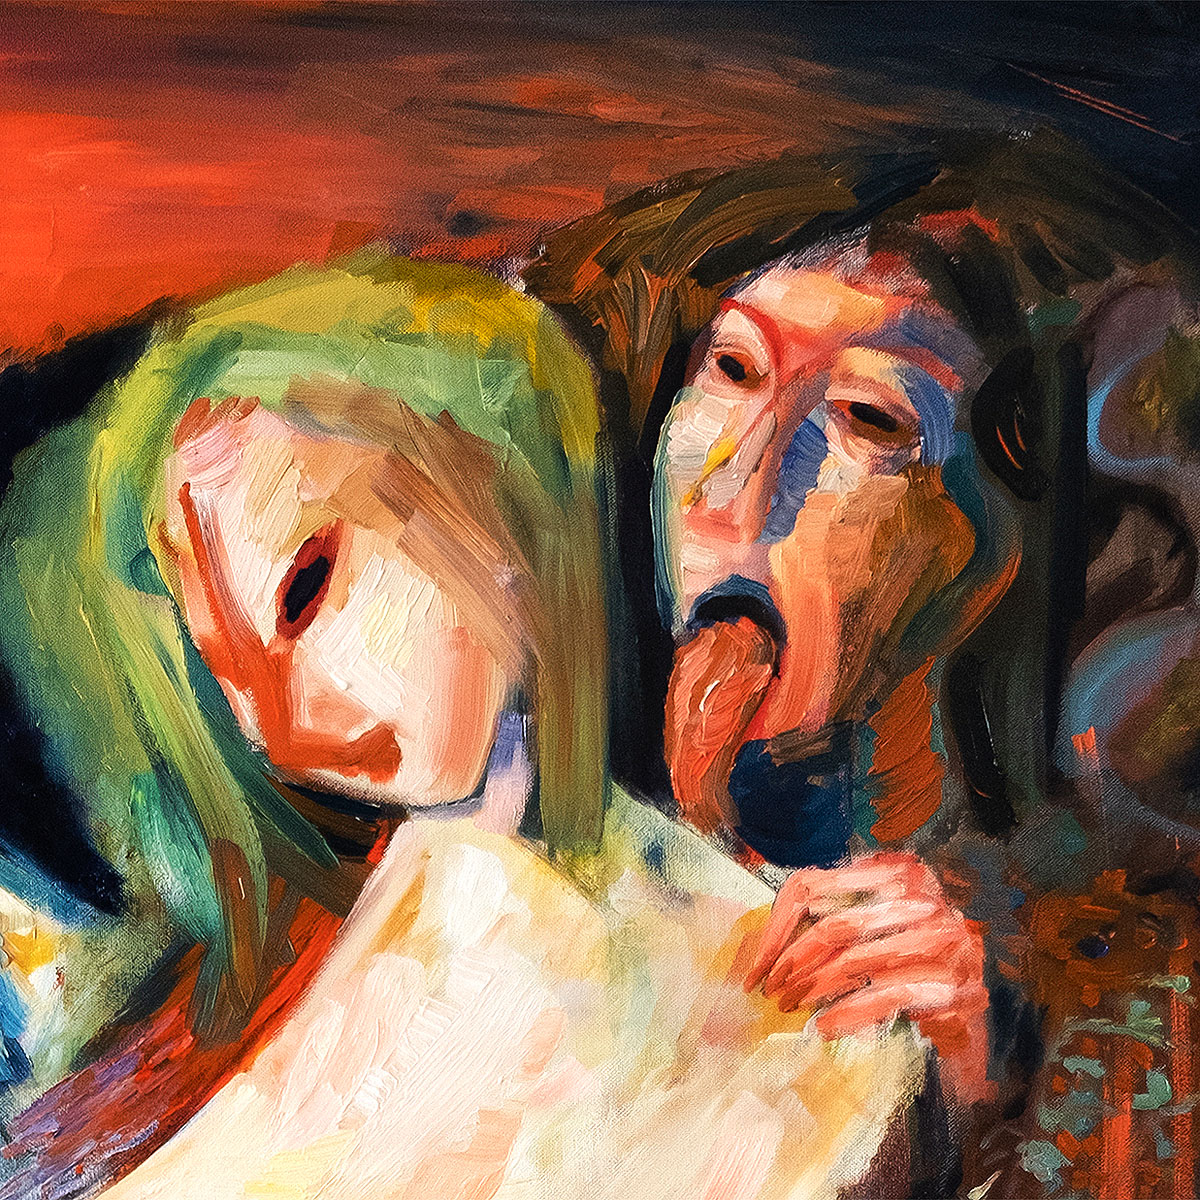 M. Cieśla: "Unsere Geister werden für uns kommen", Original/Unikat, expressionistisches Ölgemälde